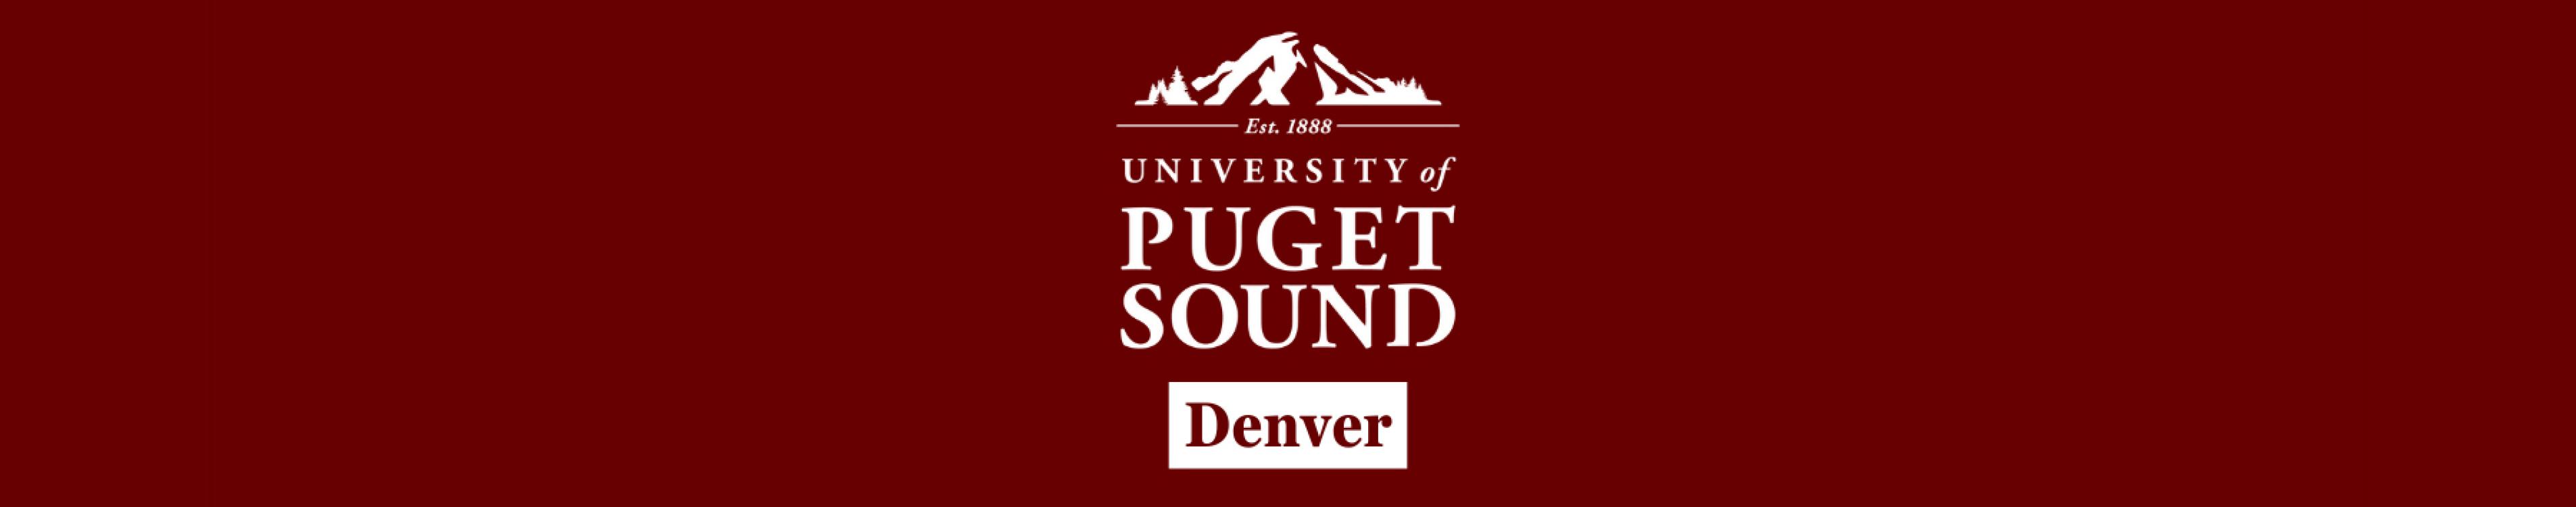 Denver Regional Alumni Club